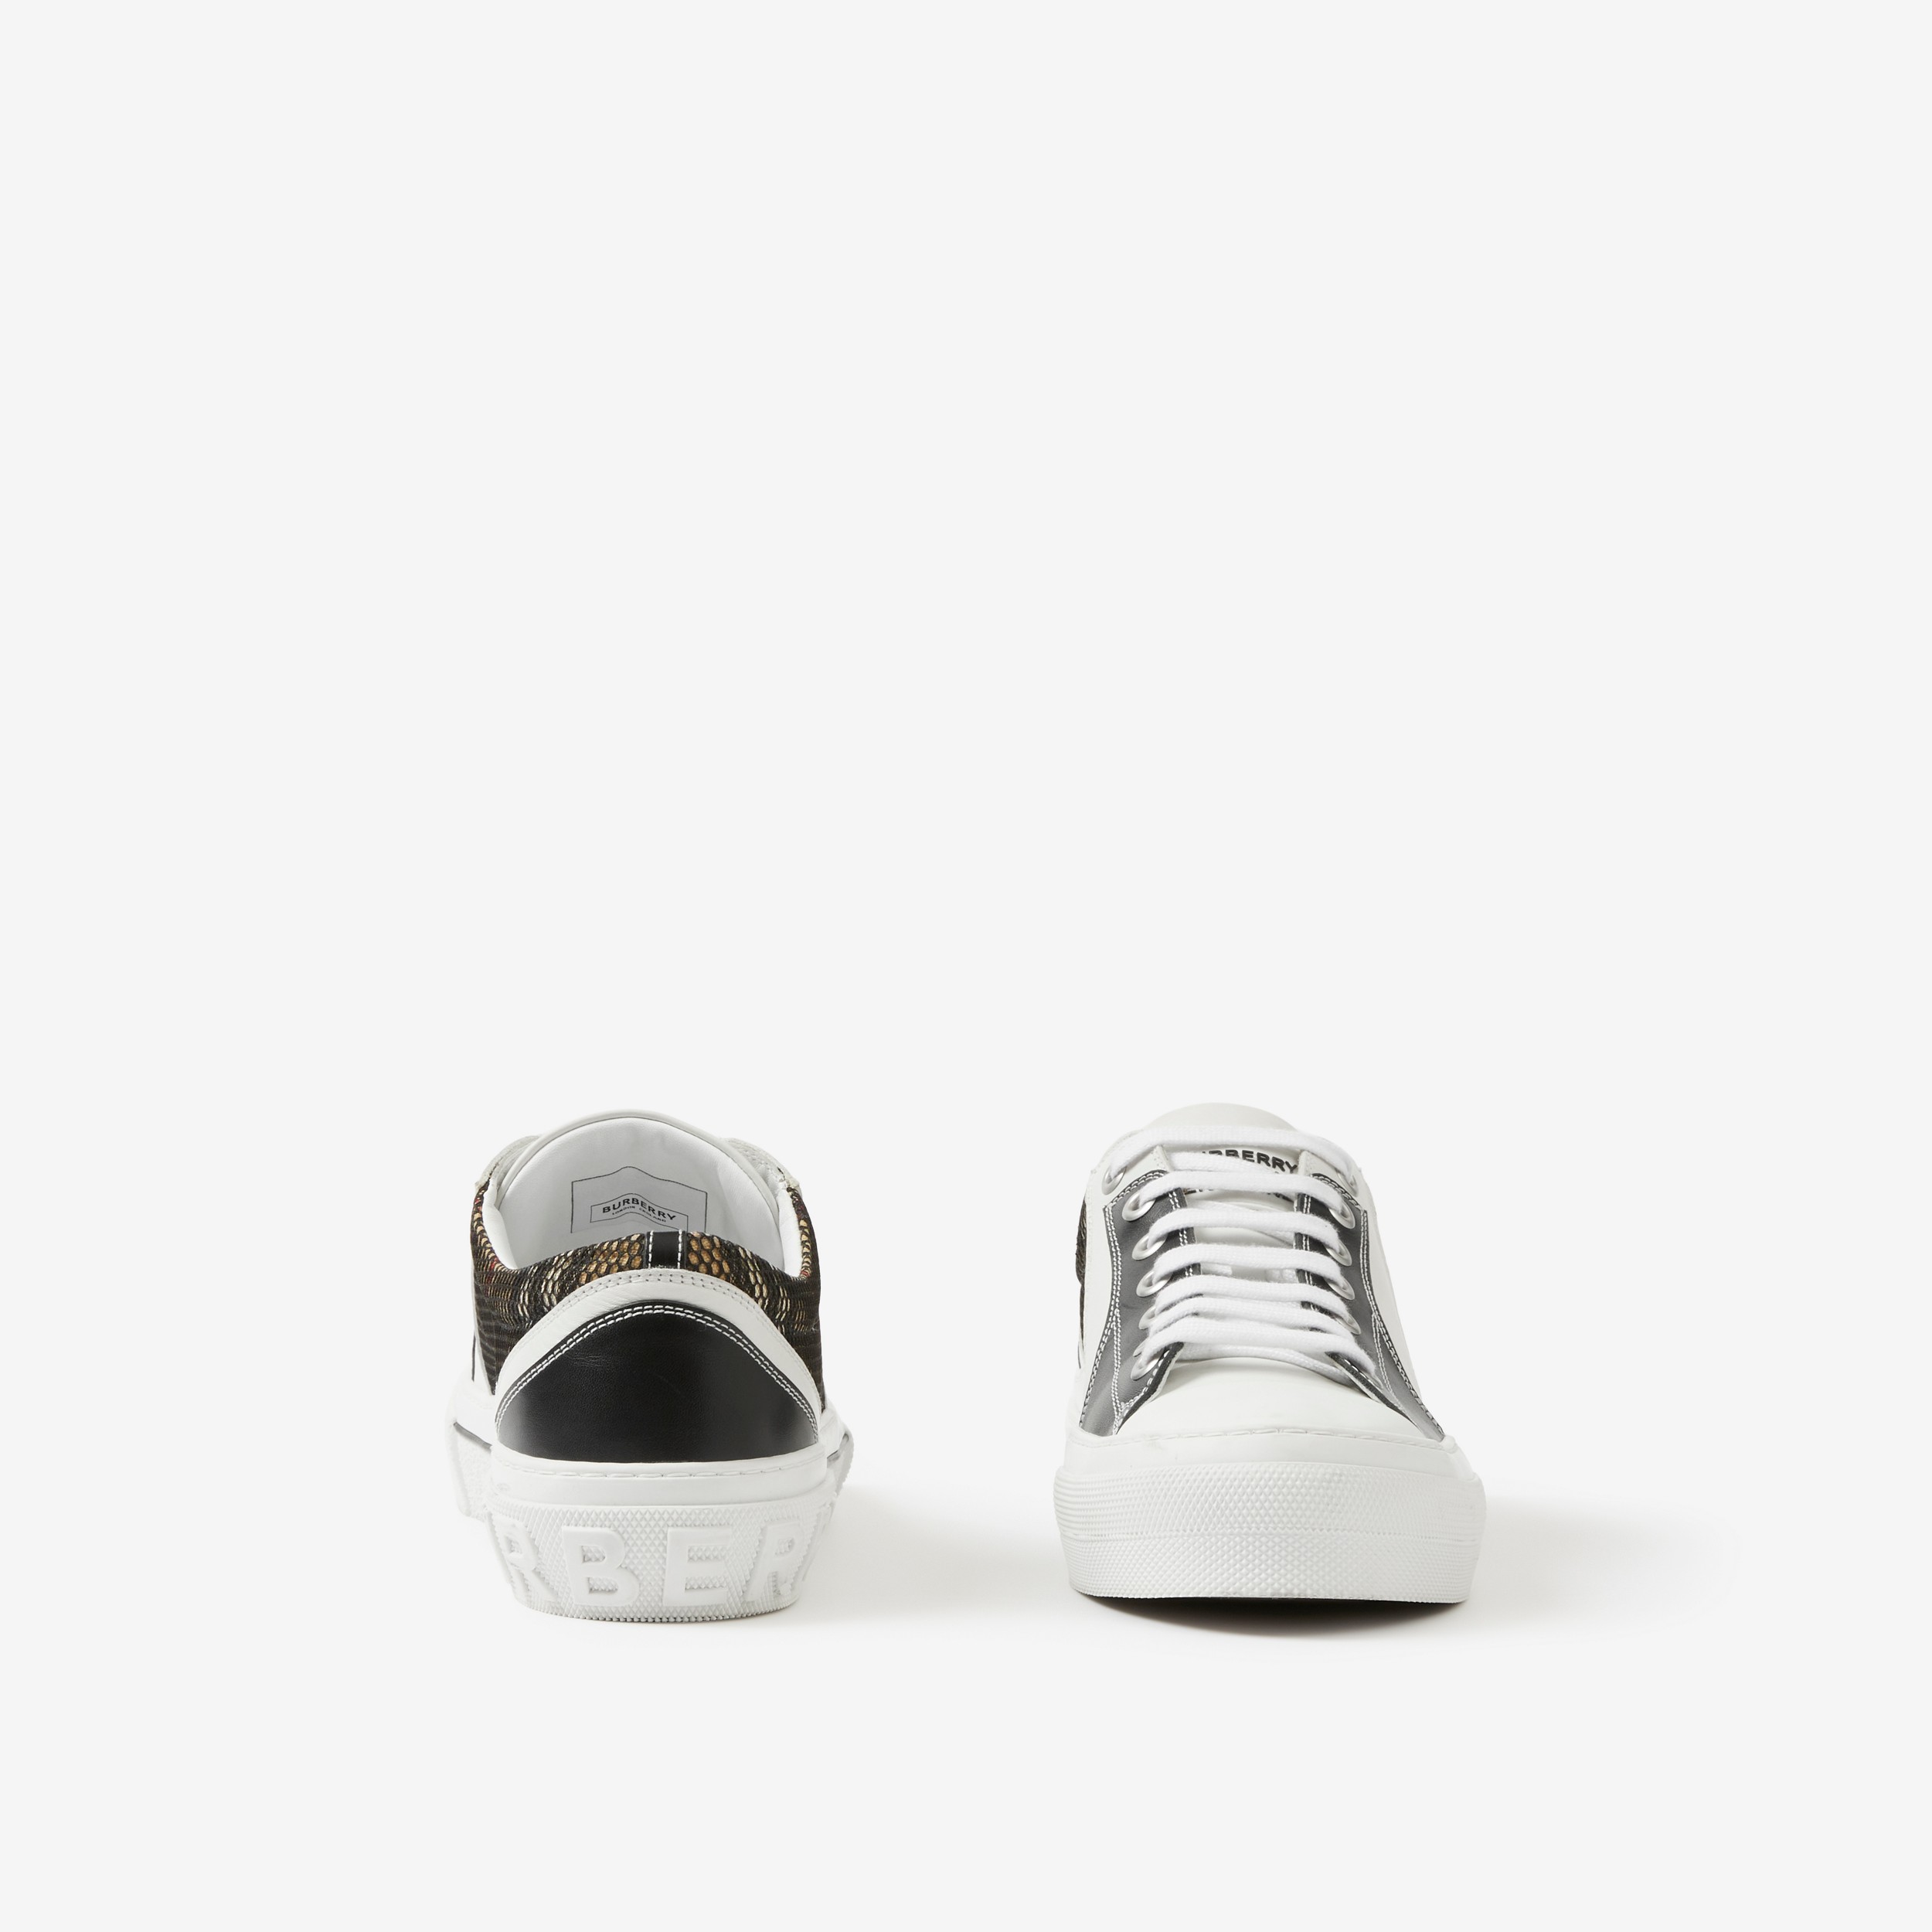 Sneakers en cuir, coton et mesh Vintage Check (Noir/blanc) - Homme | Site officiel Burberry® - 4